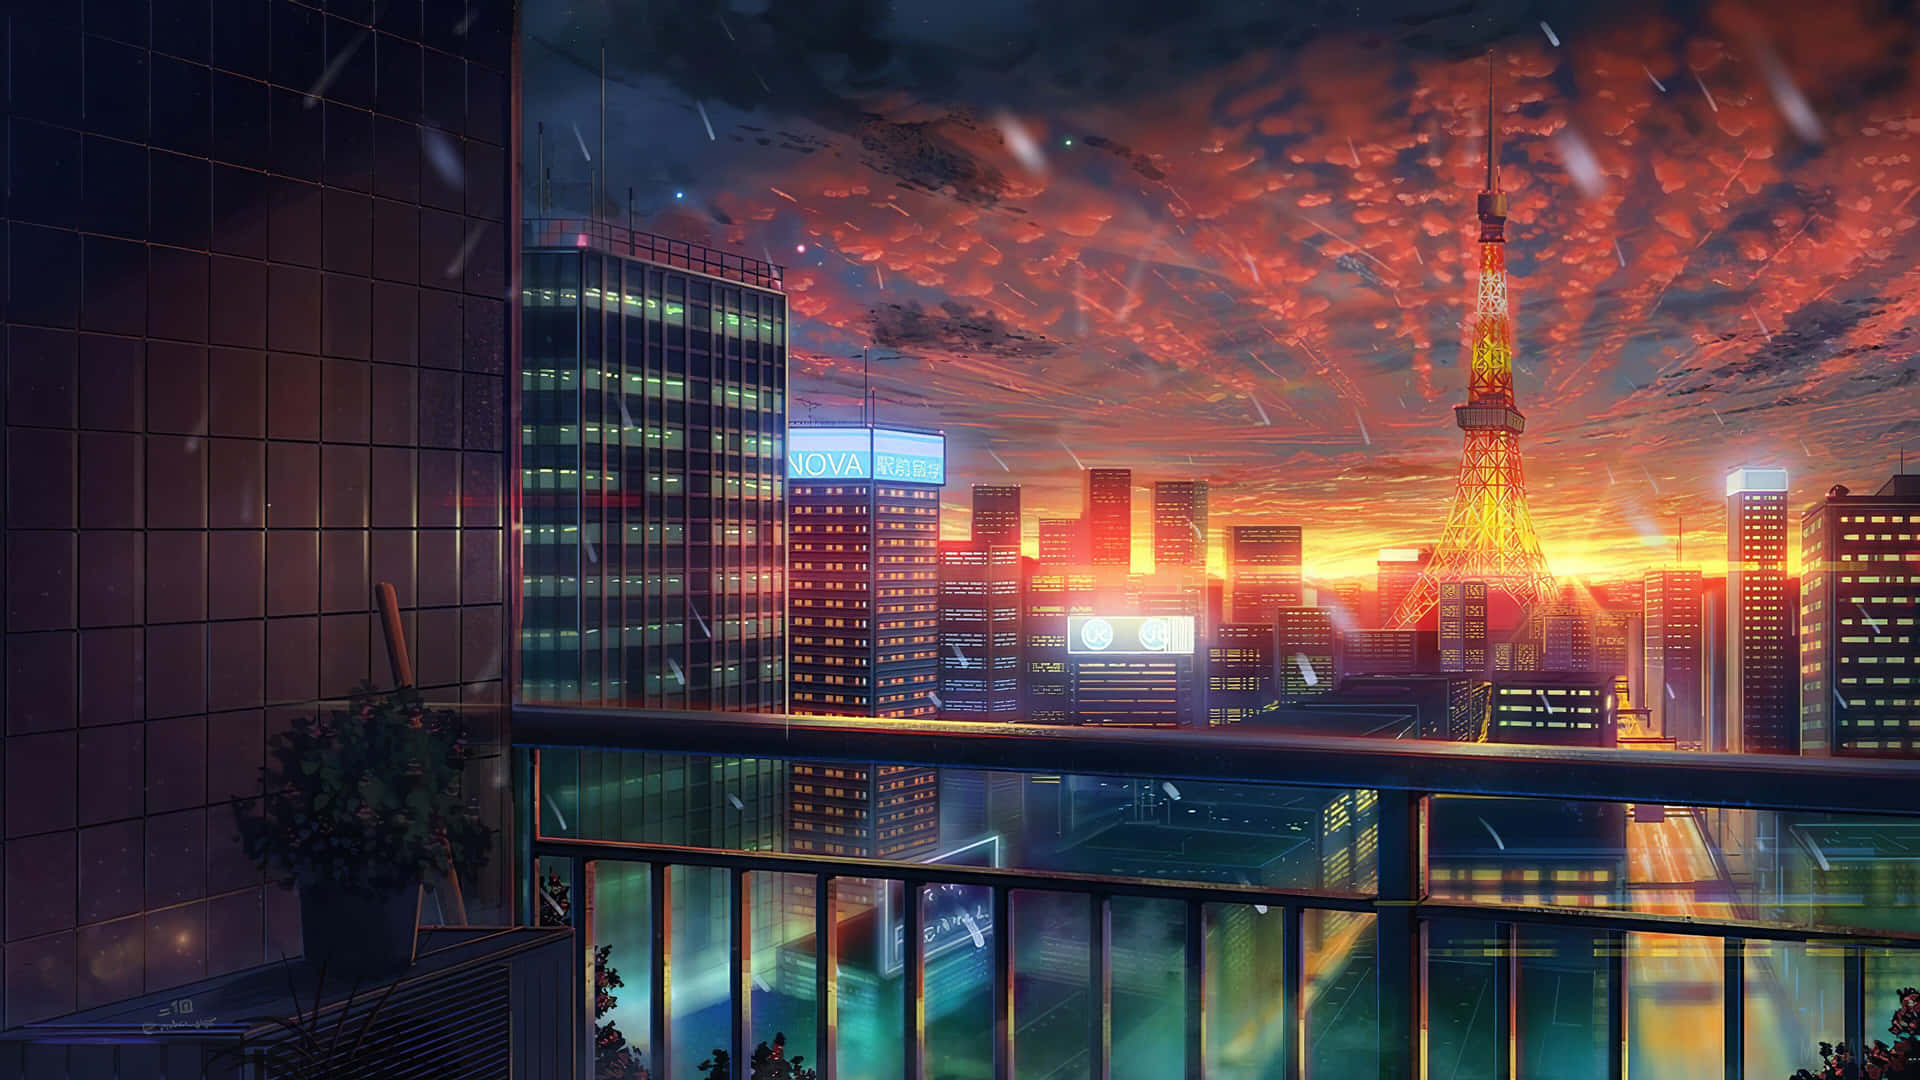 Impresionantepaisaje Urbano De Tokyo En 4k, Con Temática De Anime. Fondo de pantalla